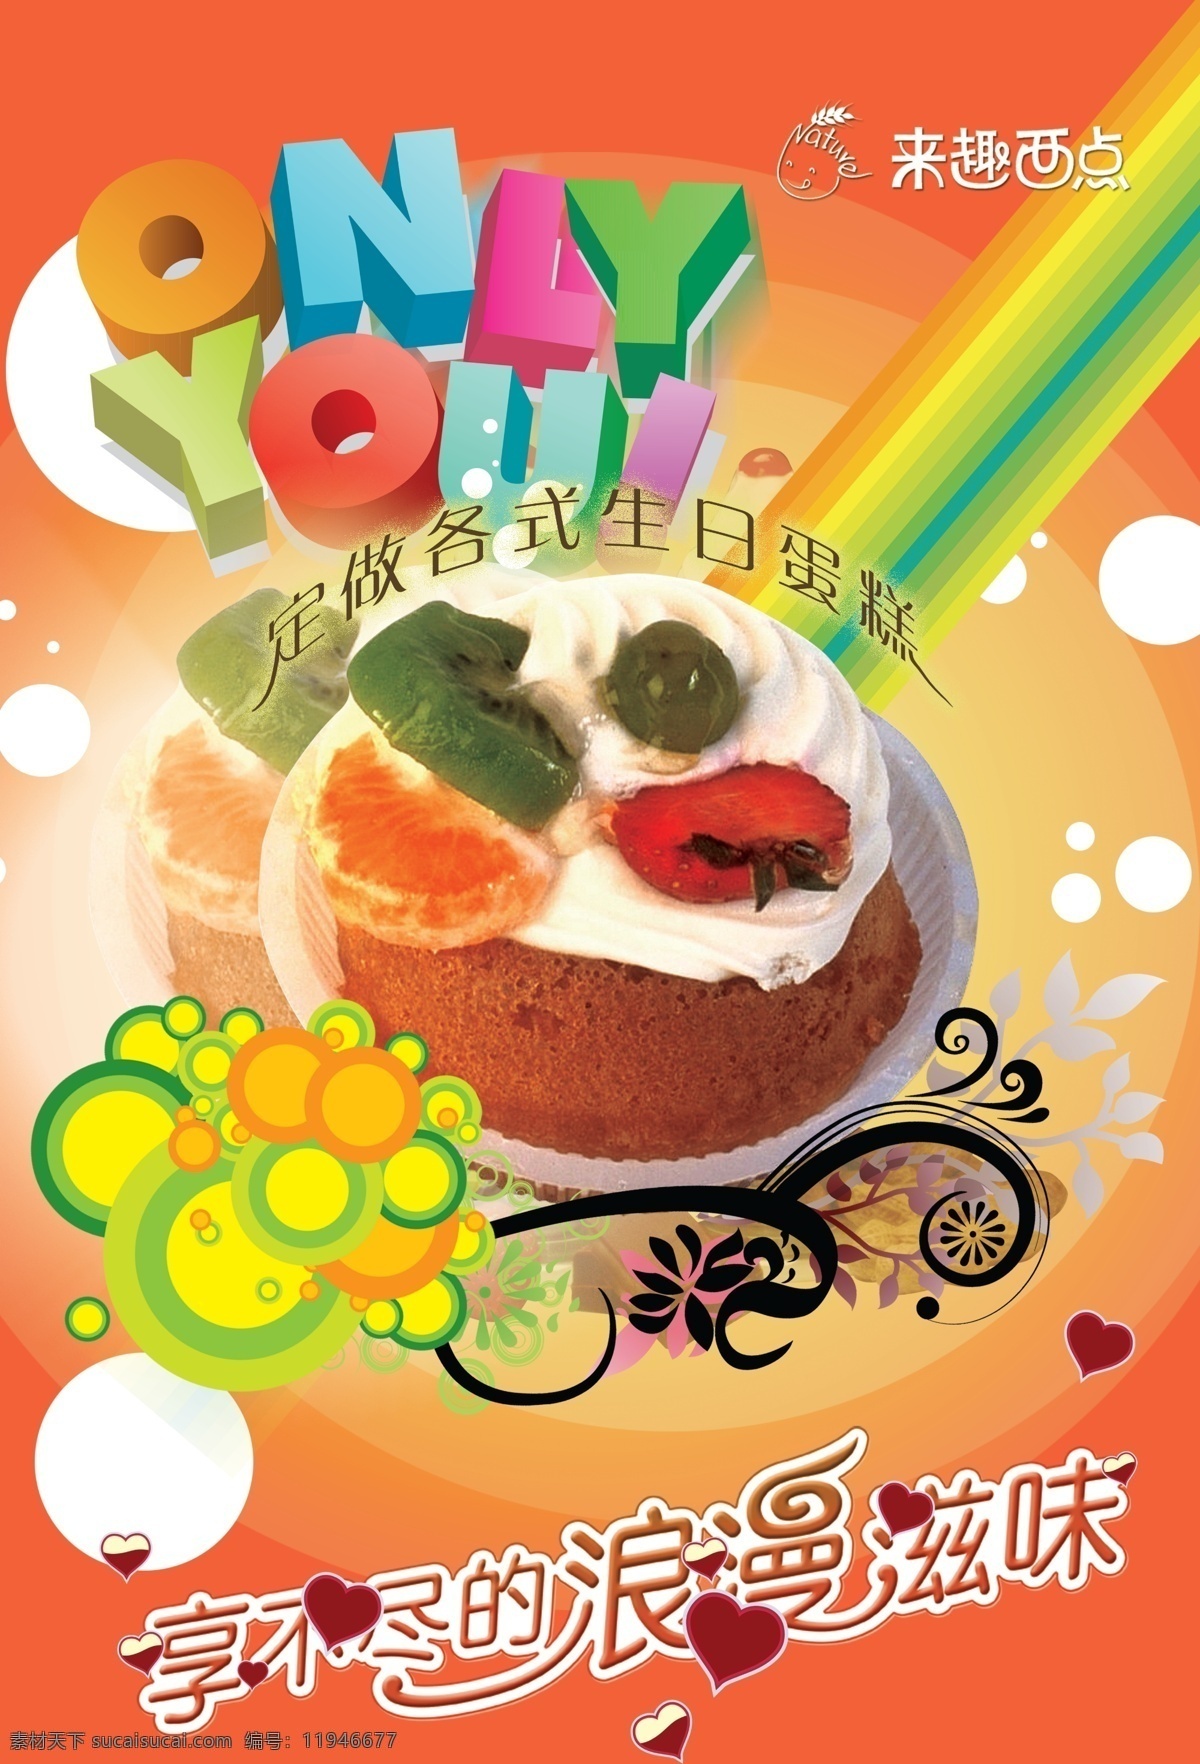 生日蛋糕 西点广告 饼房海报 其他海报设计